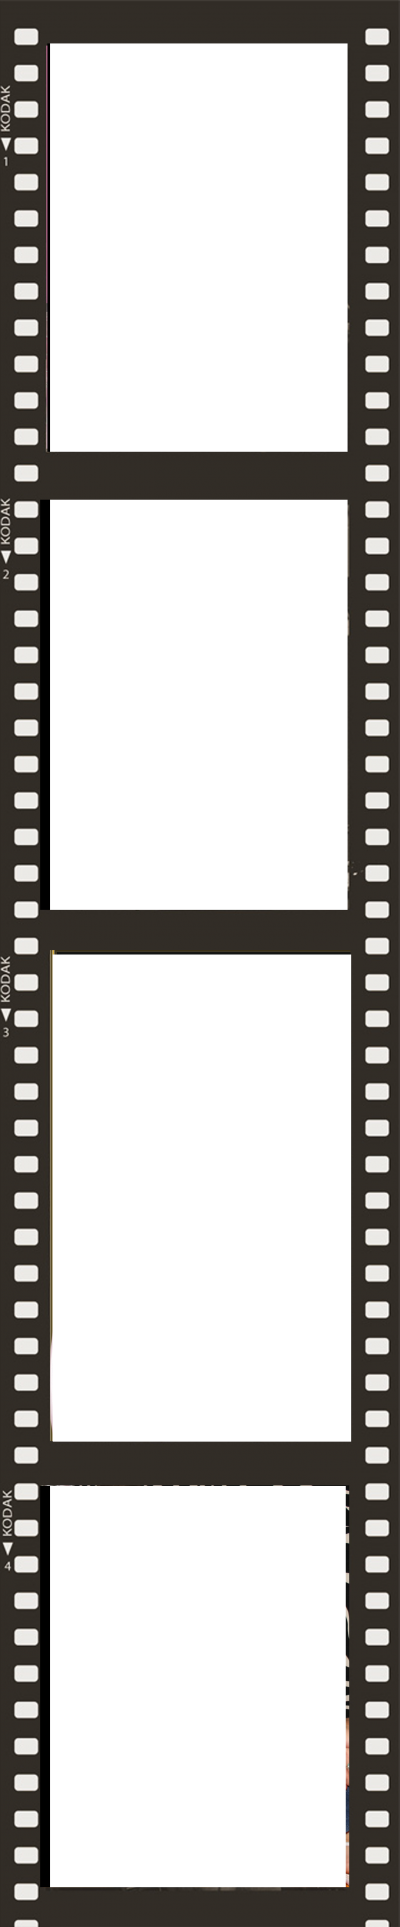 Filmstrip Movie Transparent Image PNG Images